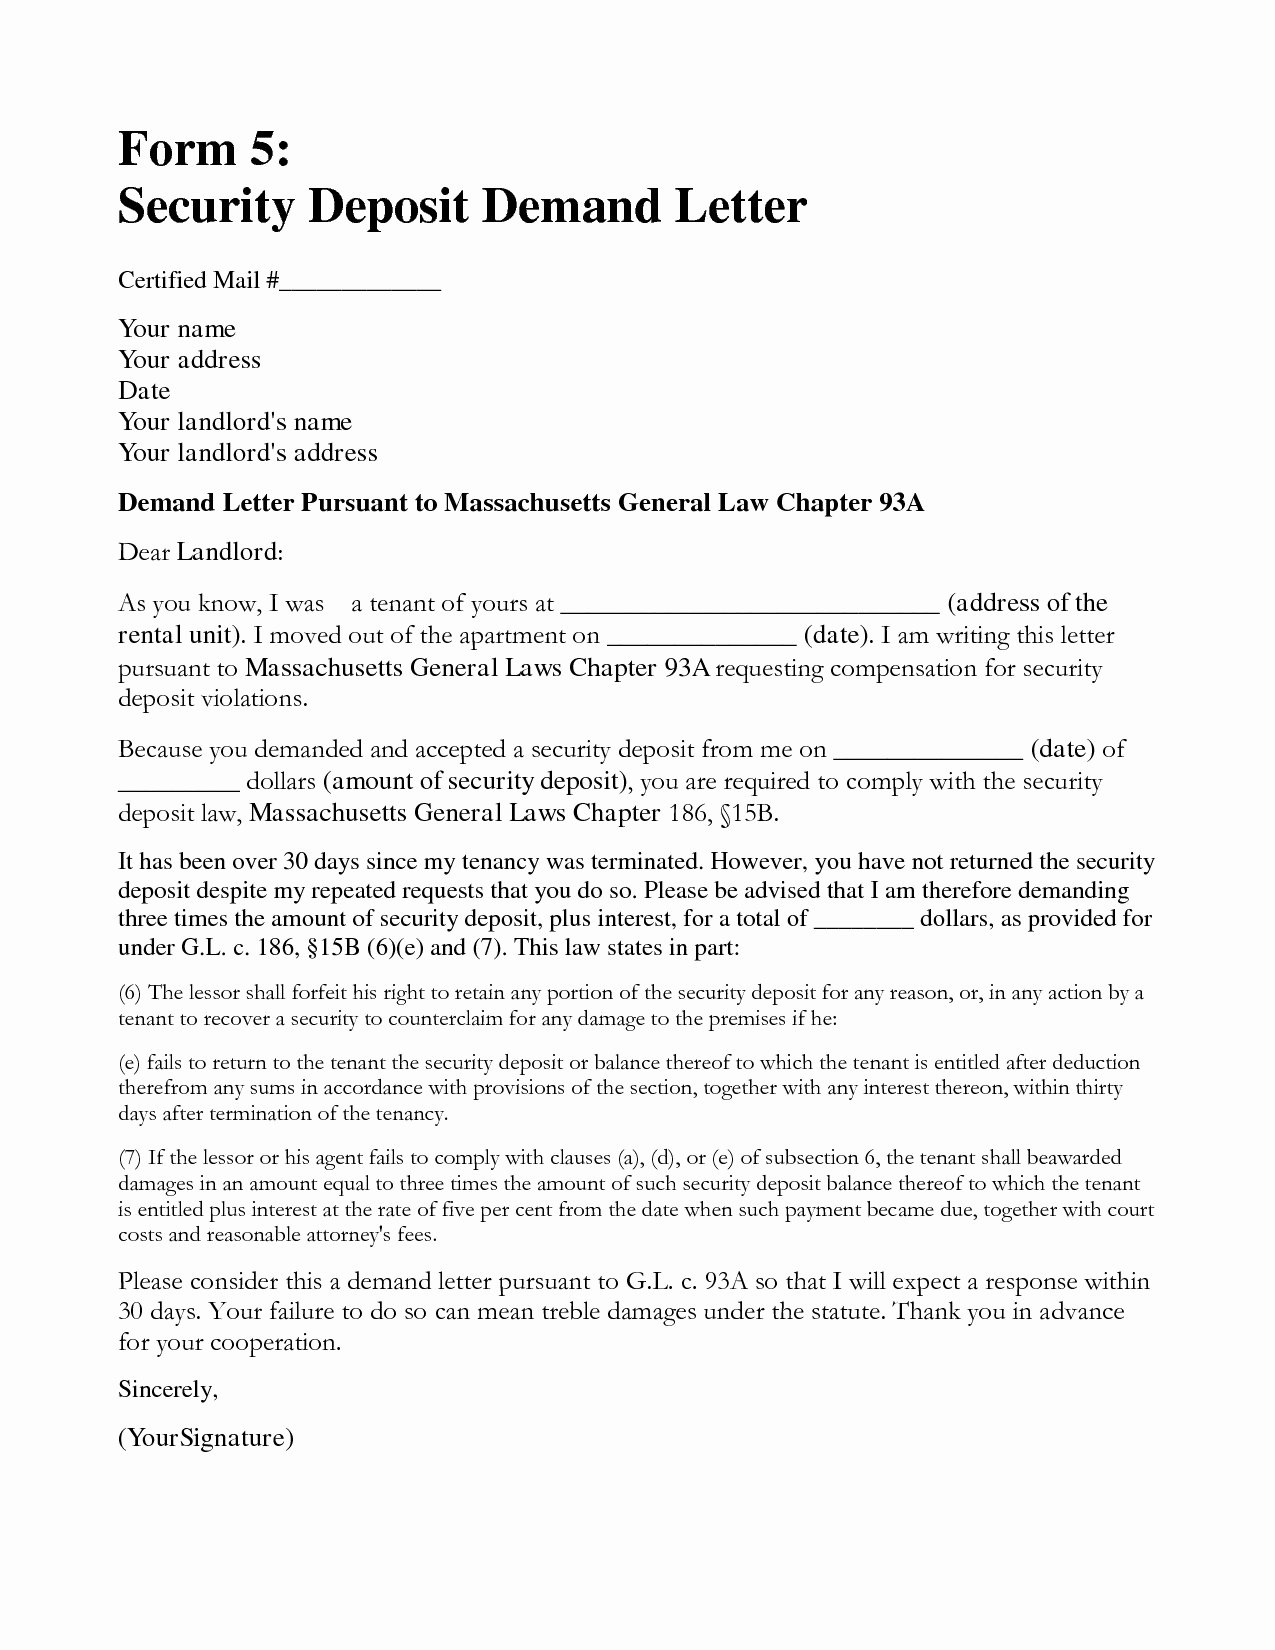 Sample Letter to Landlord Elegant Demand Letter to Landlord Template Samples